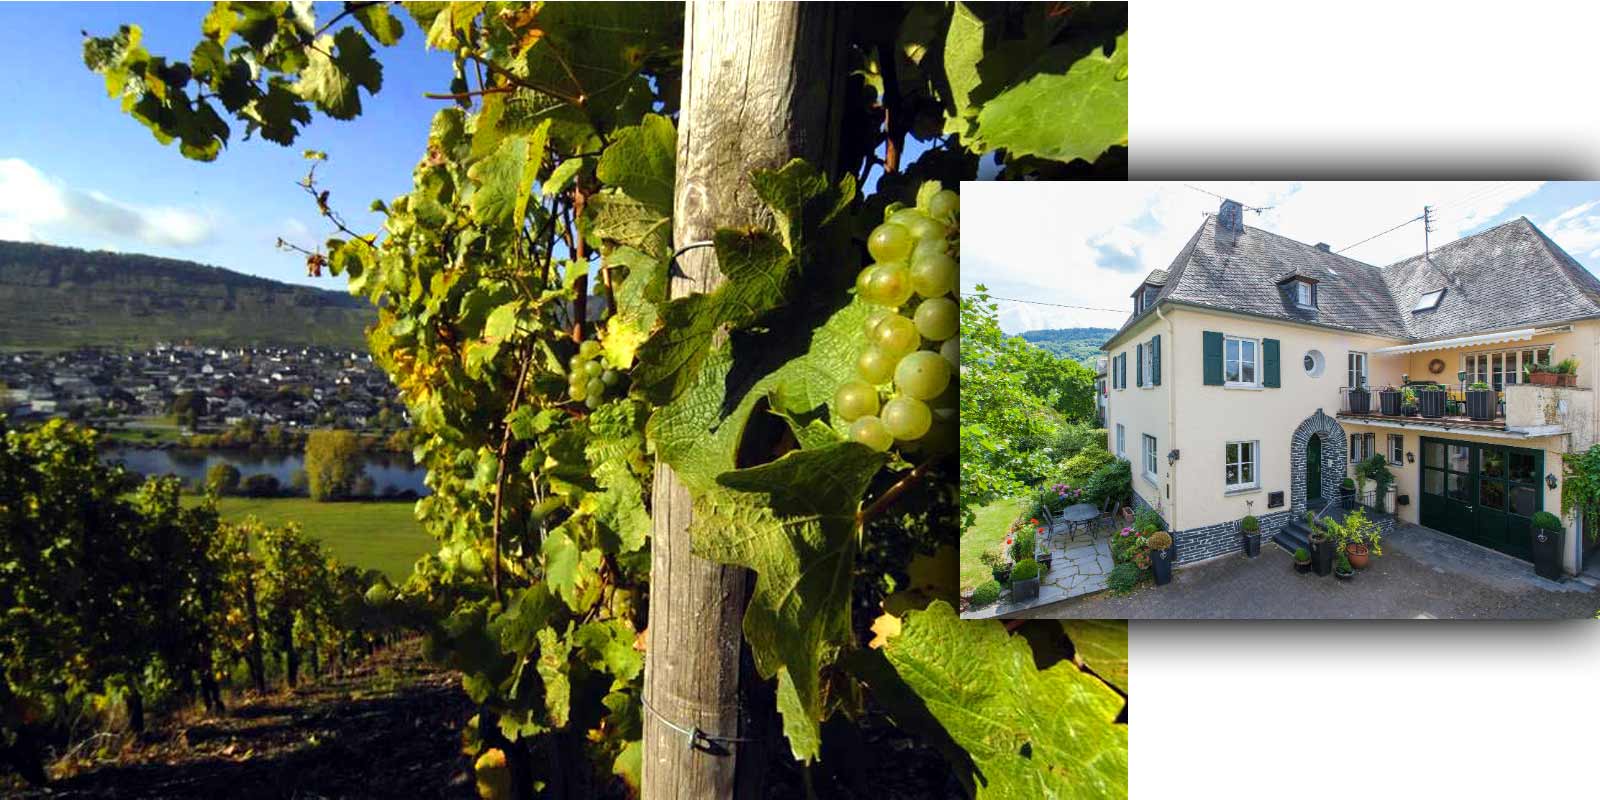 Winiarnia Grans-Fassian - region winiarski Mozeli Gerhard Grans przejal uprawe winorosli od swojego ojca Matthiasa w 1982 roku i powiekszyl obszar winnic o powierzchni 4 hektarow do dzisiejszych 9,5 hektarow, z czego 88% obsadzonych jest Rieslingiem, 10% Pinot Blanc i 2% Pinot Gris. Sklasyfikowane sa takze najlepsze lokalizacje winnicy - zaliczane sa do najwyzszej kategorii upraw.